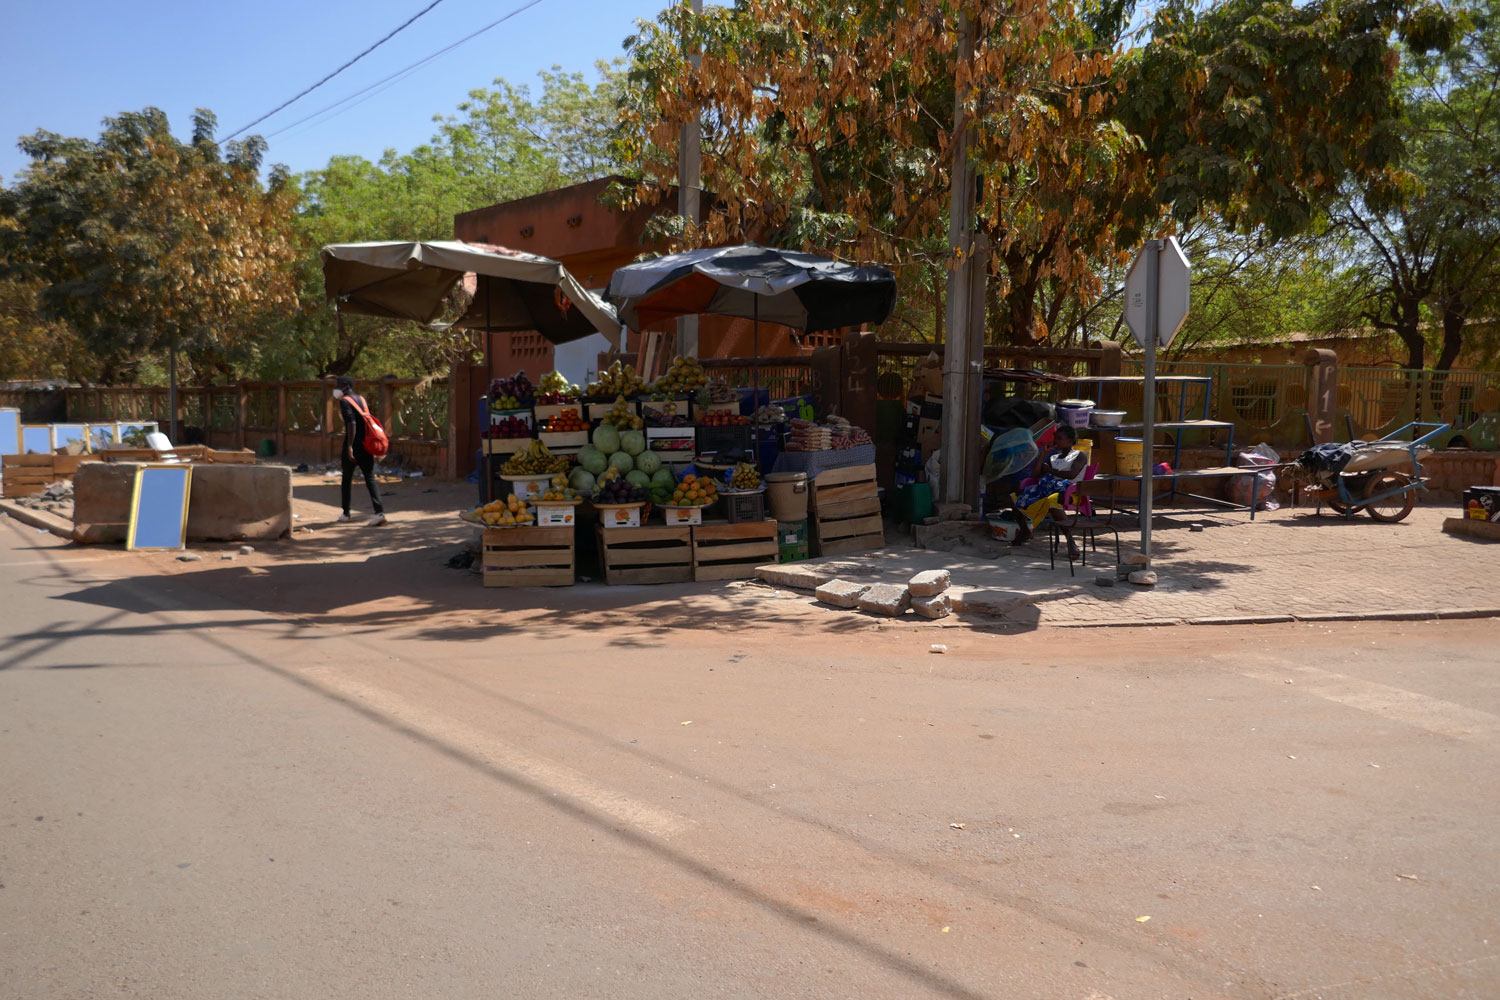 À Ouagadougou, le vent l’harmattan dépose sa poussière et habille la ville en rouge. A chaque coin des grandes avenues, des commerces sont établis à l’ombres des grands arbres © Globe Reporters